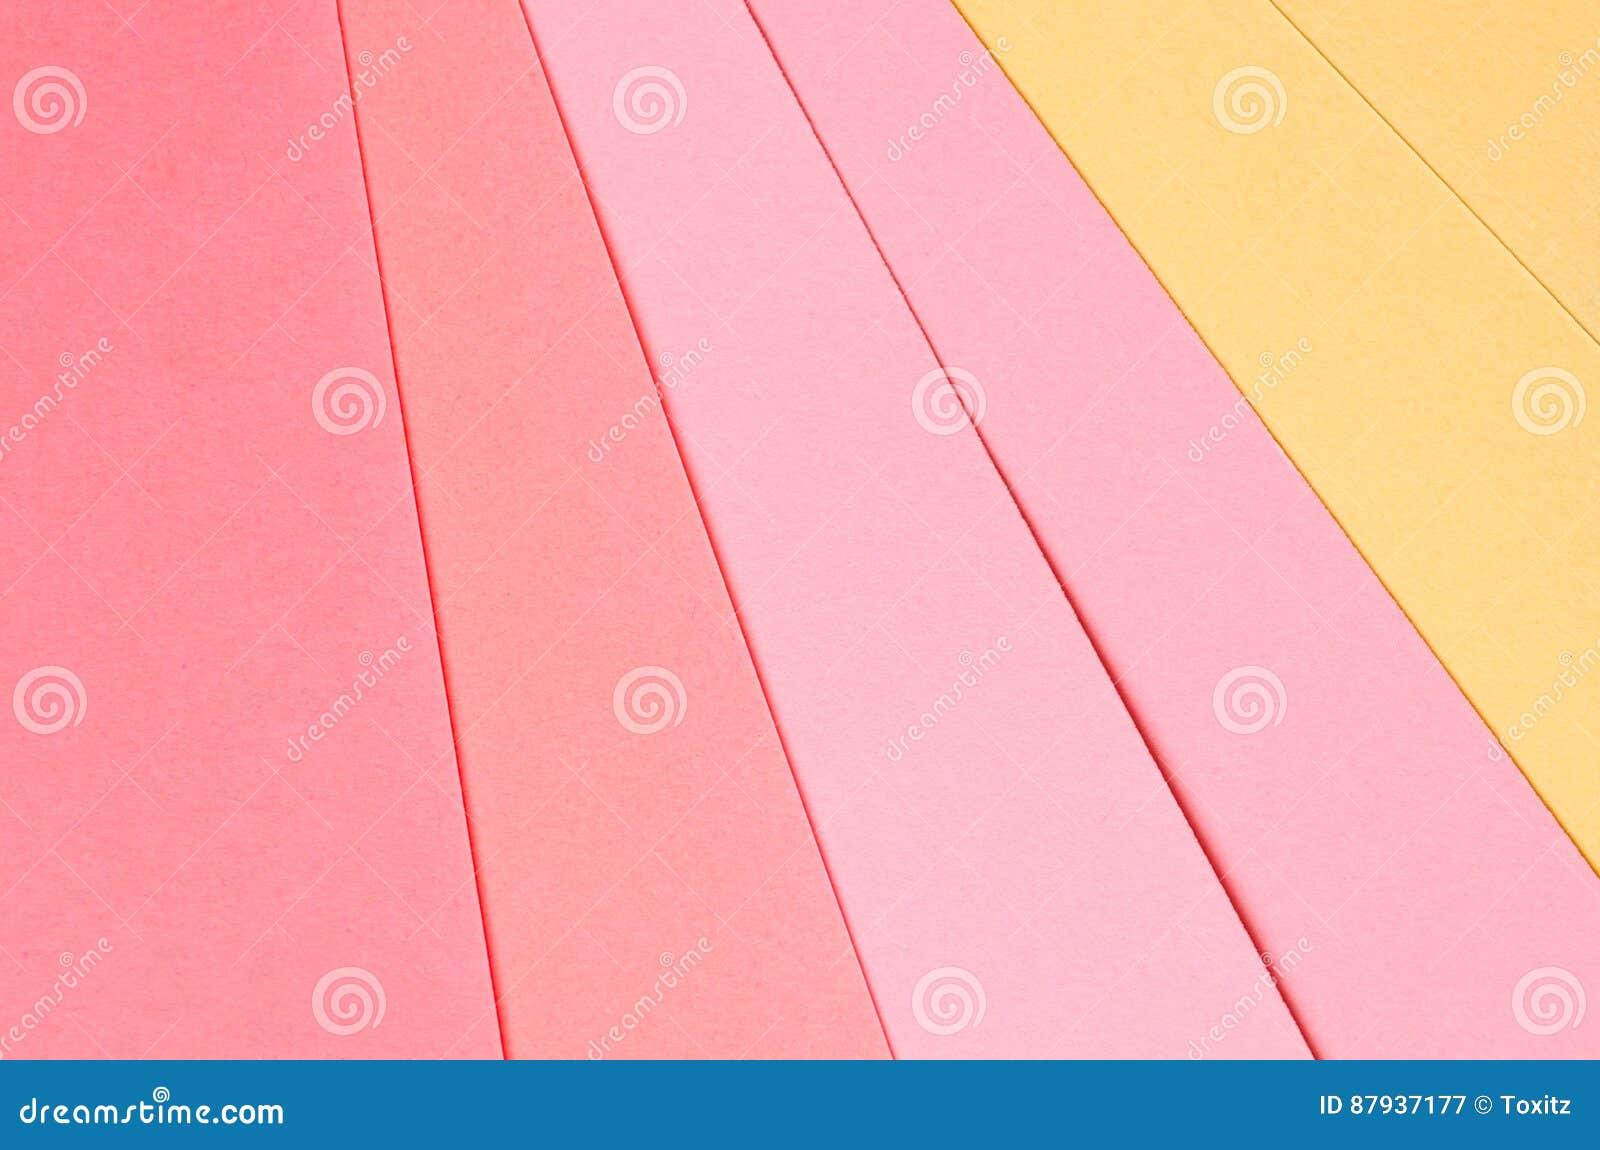 低价批发印尼IK色书纸 进口彩色双胶纸 双面彩色纸 手工纸 特种纸-阿里巴巴